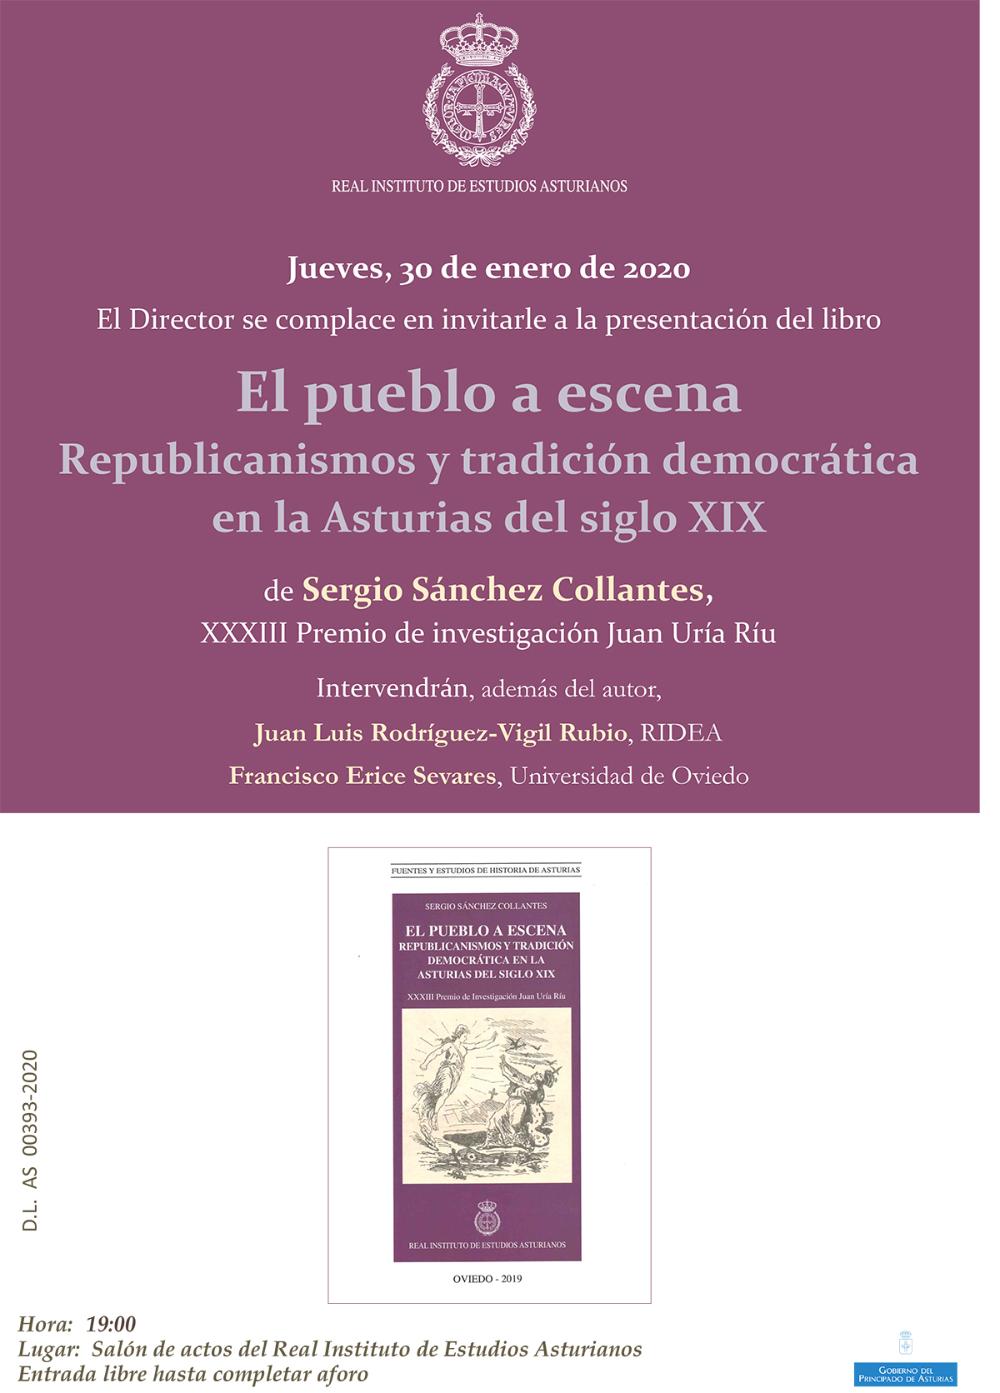 Imagen - Presentación del libro El pueblo a escena. Republicanismos y tradición democrática en la Asturias del siglo XIX